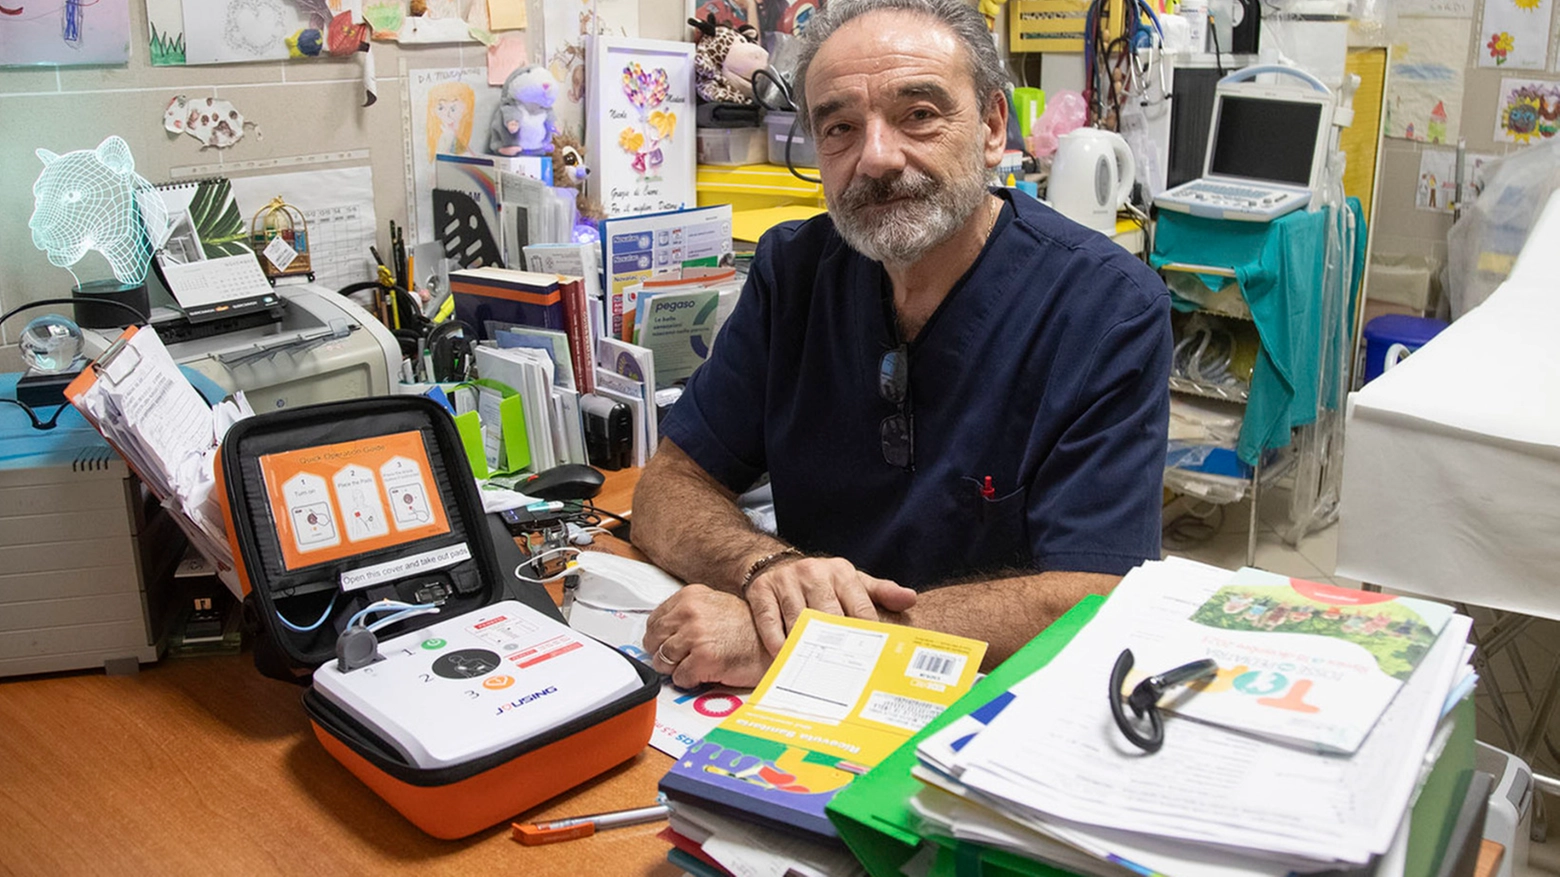 Il pediatra Lamberto Reggiani: “Le ho praticato il massaggio cardiaco per otto minuti, poi è arrivata l’ambulanza”. E lancia un appello: “Servono più defibrillatori, anche nei condomini”